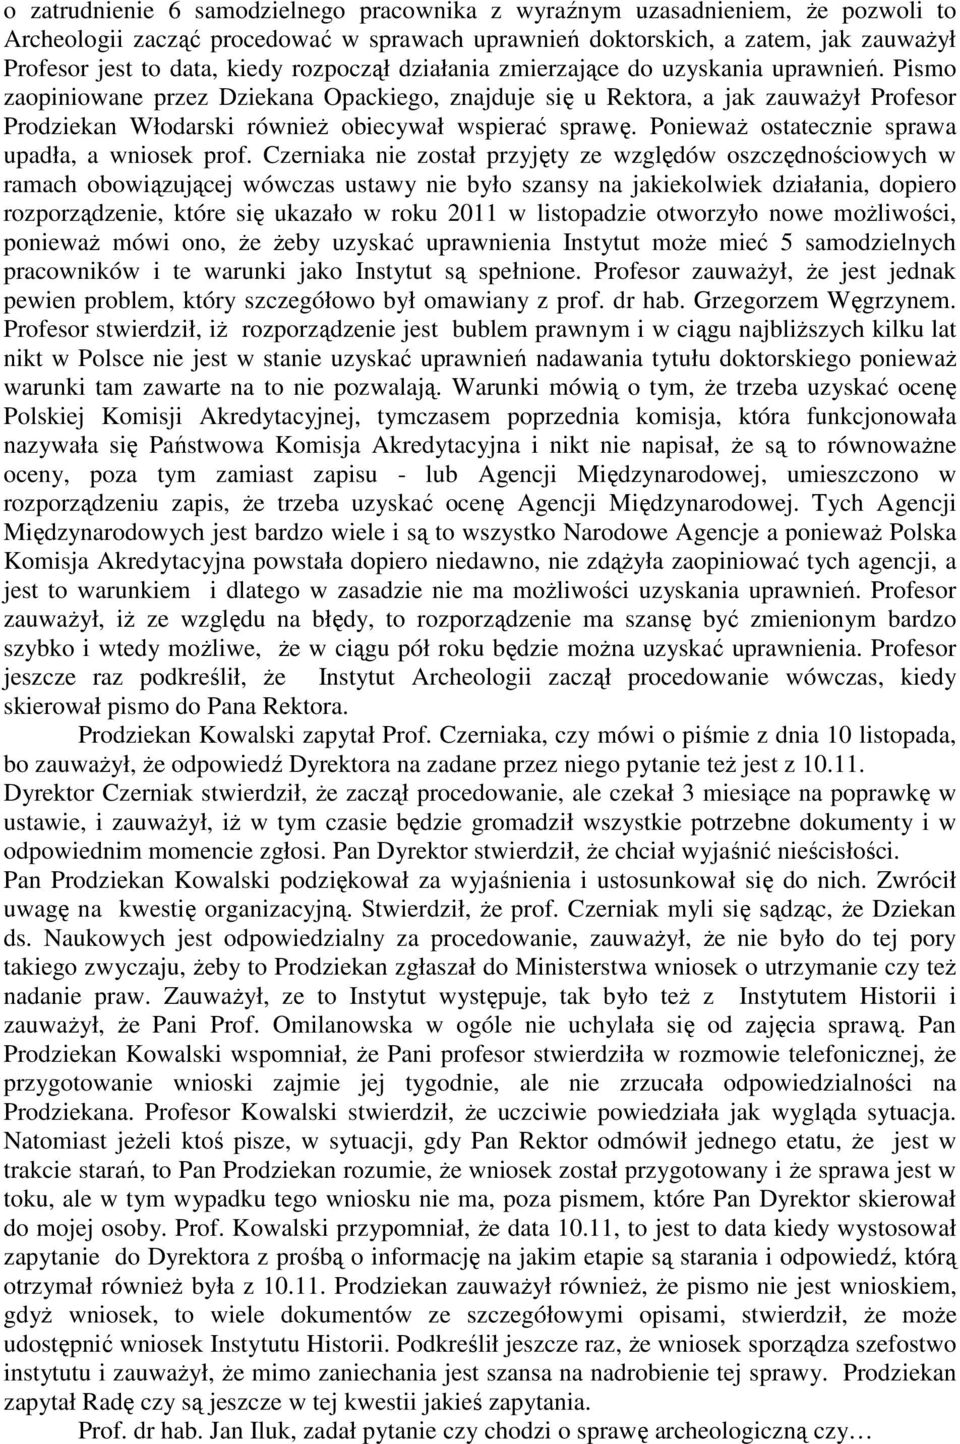 Pismo zaopiniowane przez Dziekana Opackiego, znajduje się u Rektora, a jak zauwaŝył Profesor Prodziekan Włodarski równieŝ obiecywał wspierać sprawę. PoniewaŜ ostatecznie sprawa upadła, a wniosek prof.